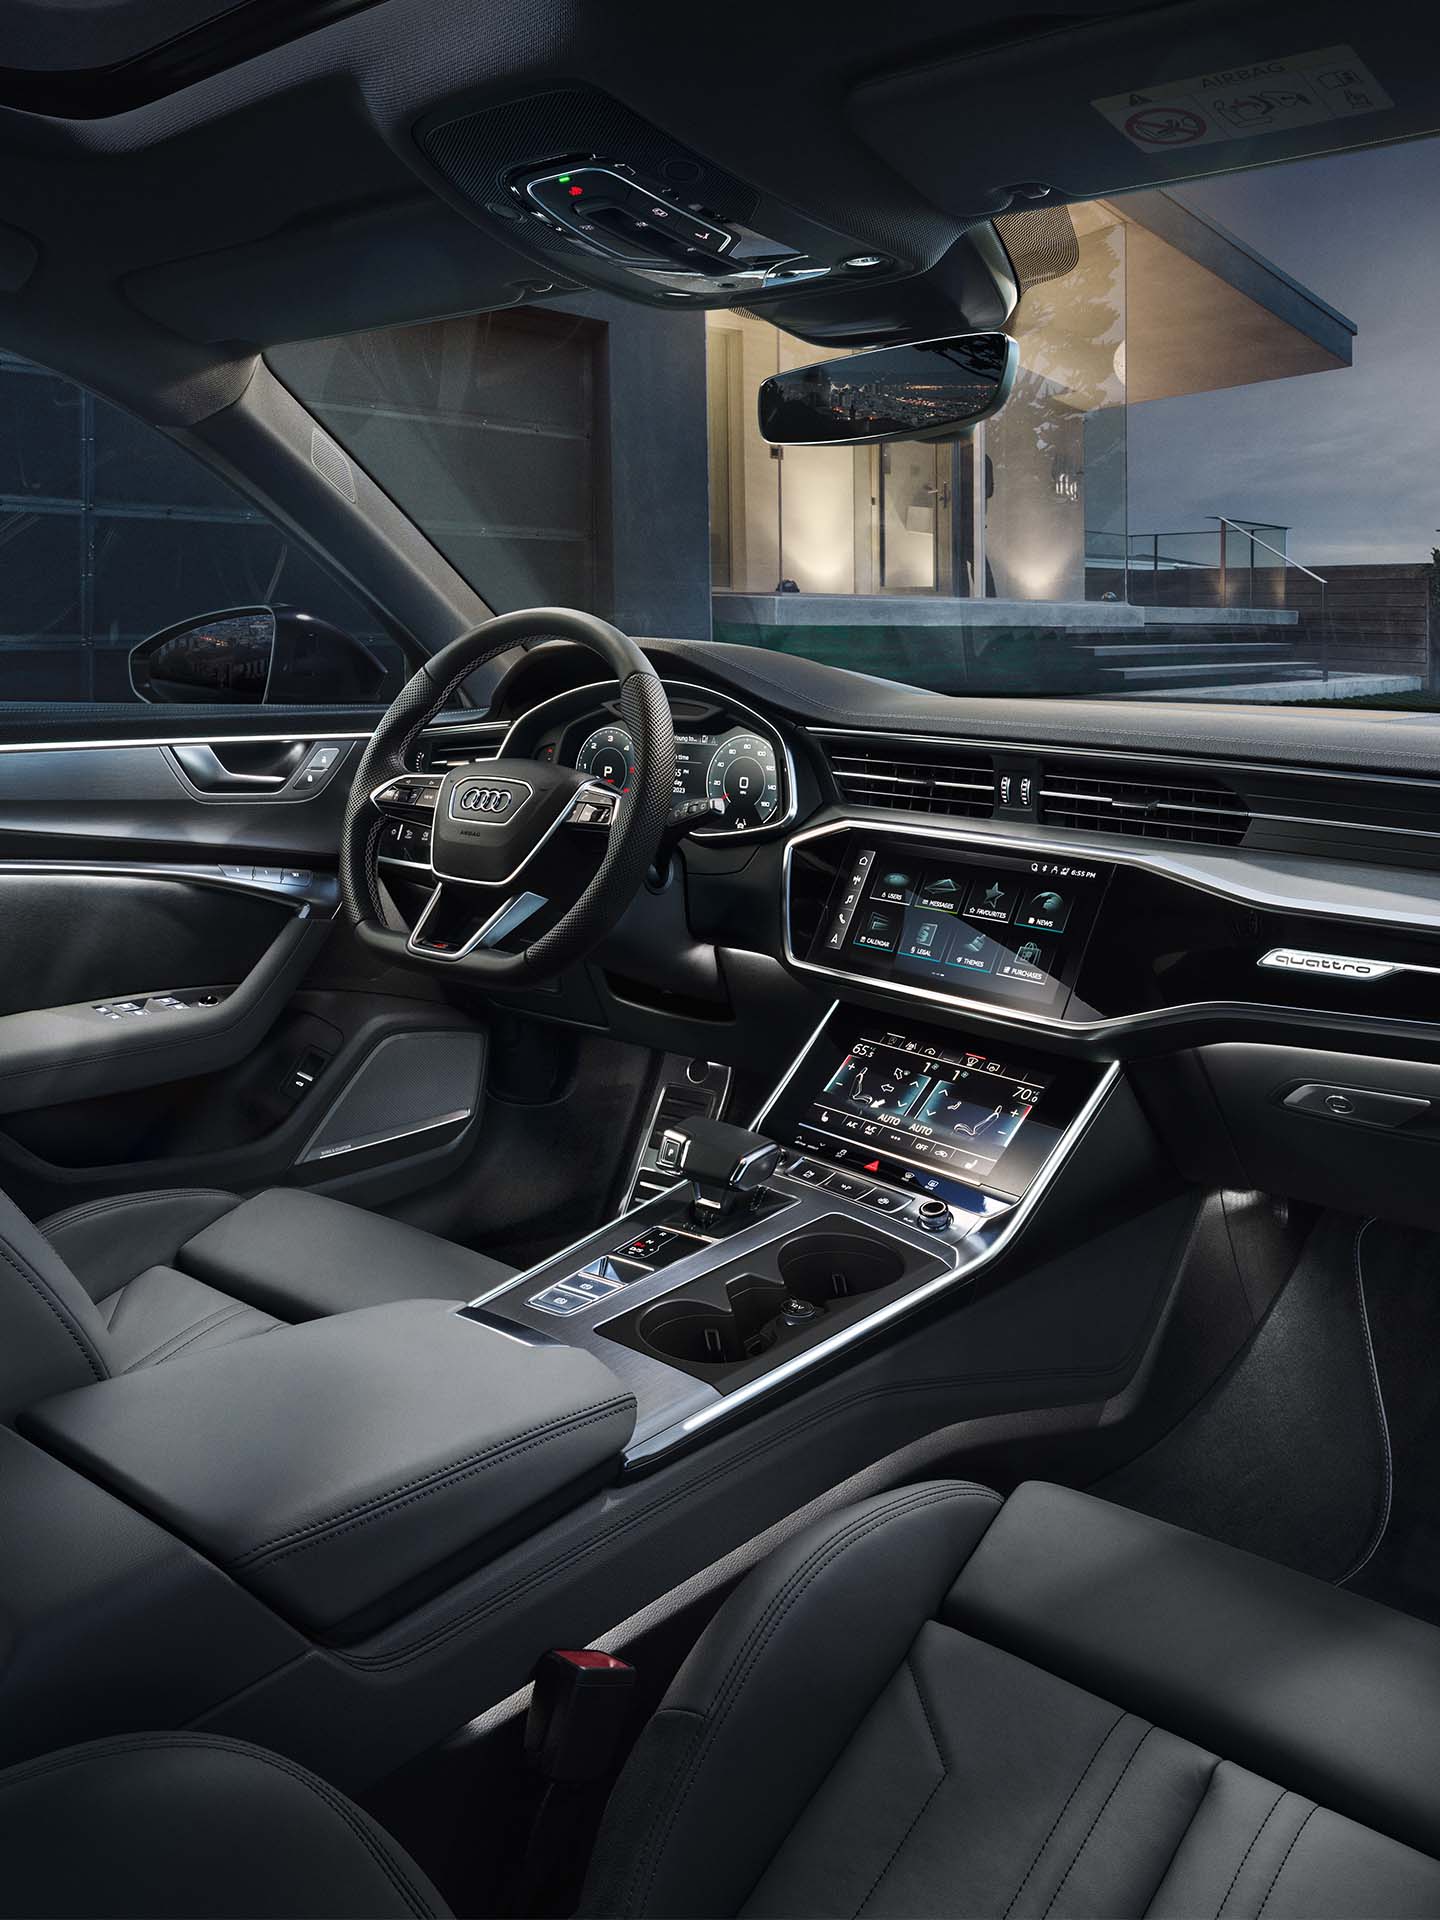 Audi thema's voor interieurverlichting